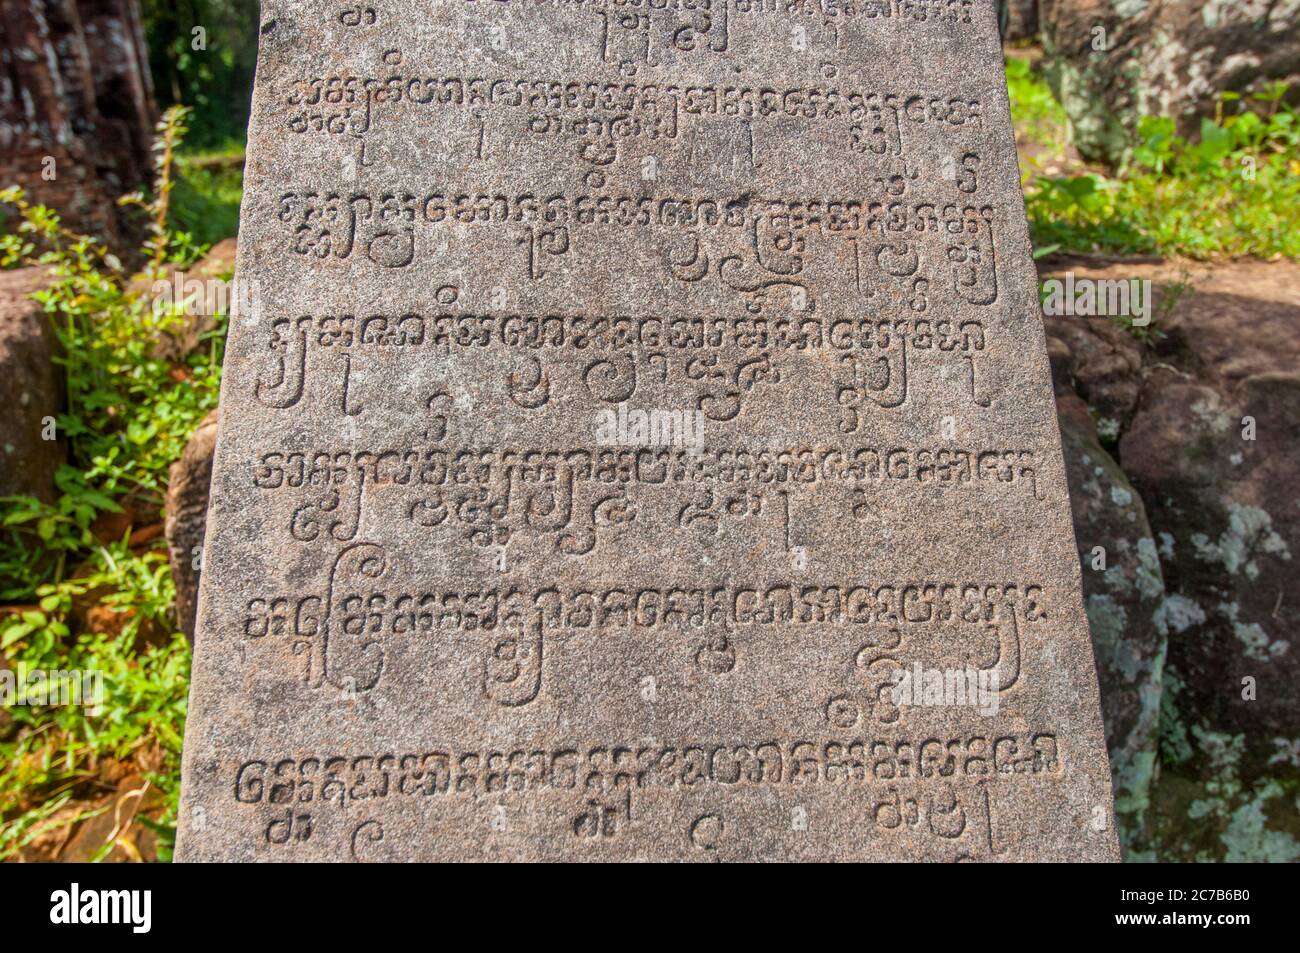 Una stele con sanscrito alle rovine del monumento Cham nel Santuario di My Son (patrimonio dell'umanità dell'UNESCO), risalente al IV al XIII secolo, vicino Foto Stock